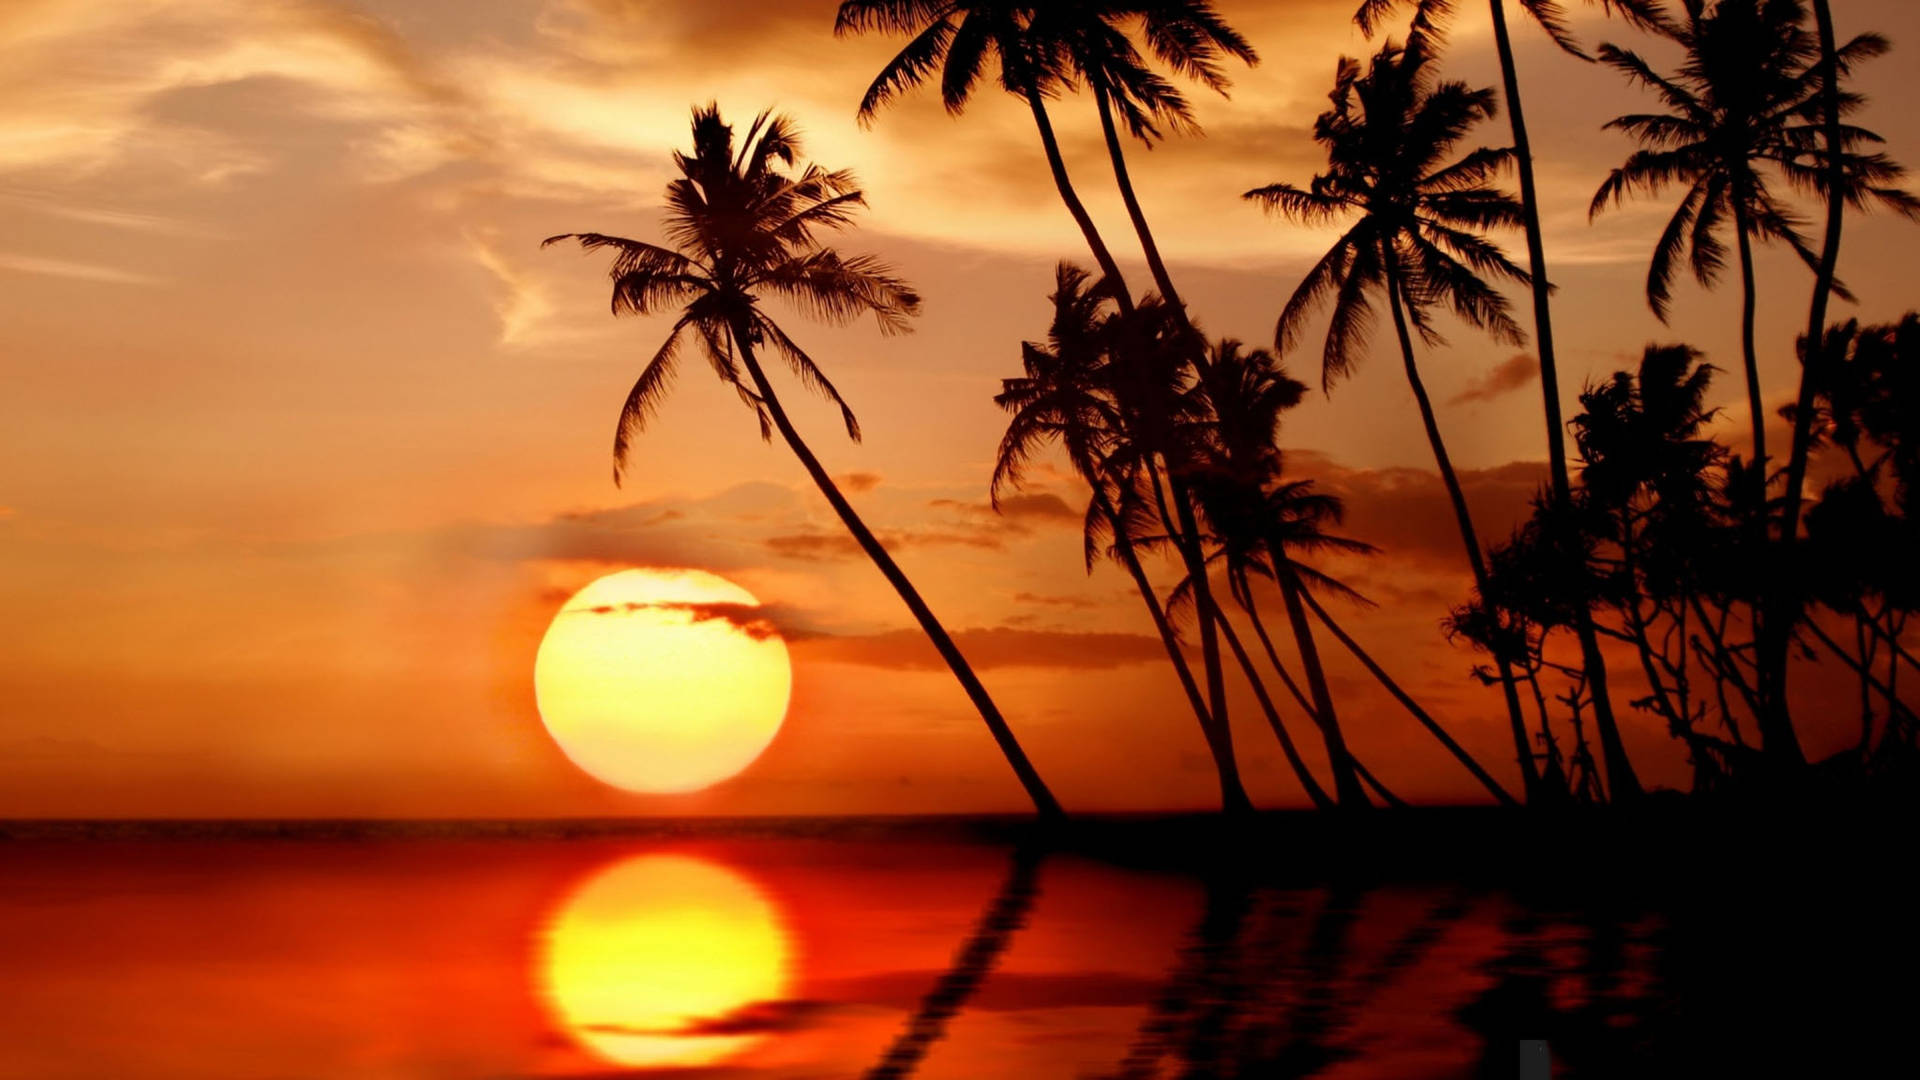 Sri Lanka Beautiful Sunset Wallpaper